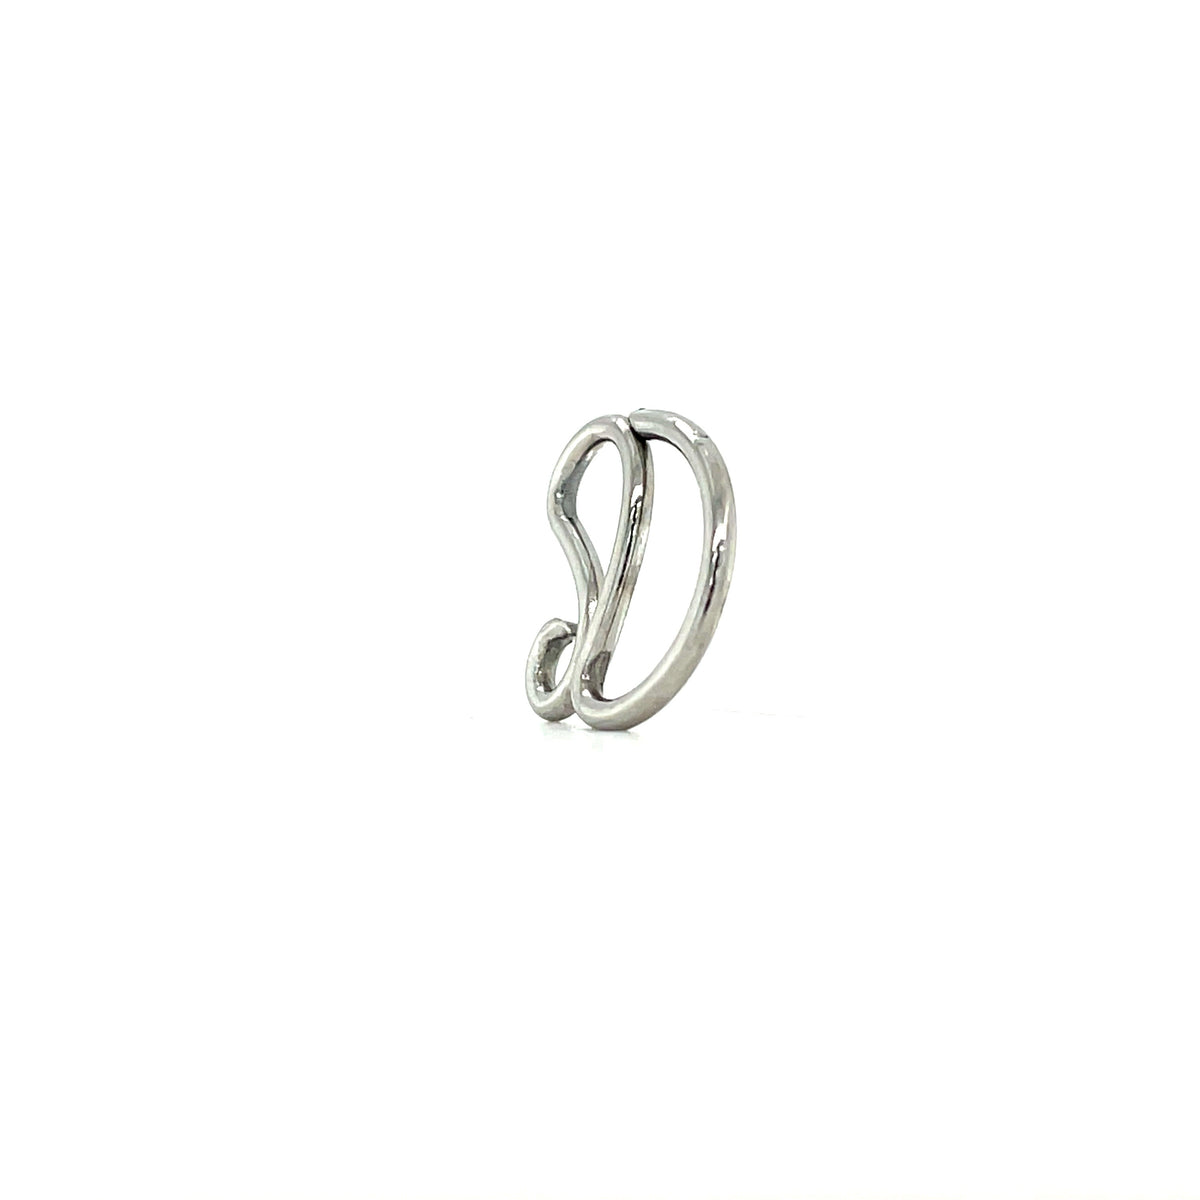 Apex Niobium Demeter Daith Rocker Spiral Ring